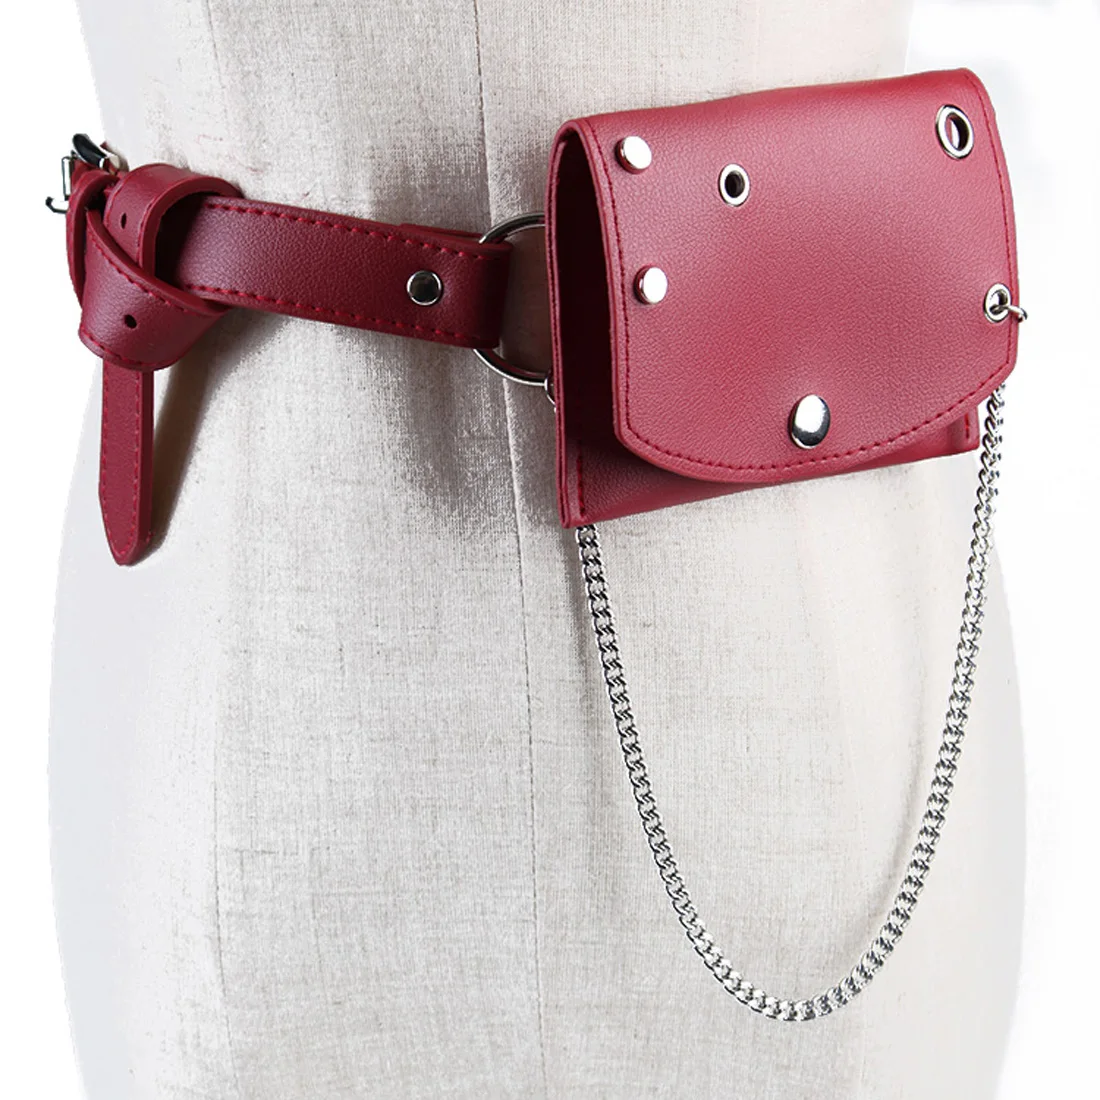 Модные новые поясные сумки для женщин, для девочек, металлические, с круглым отверстием, с заклепками, тонкие сумочки с монетками, широкий пояс, мини-упаковка для платья - Цвет: Красный